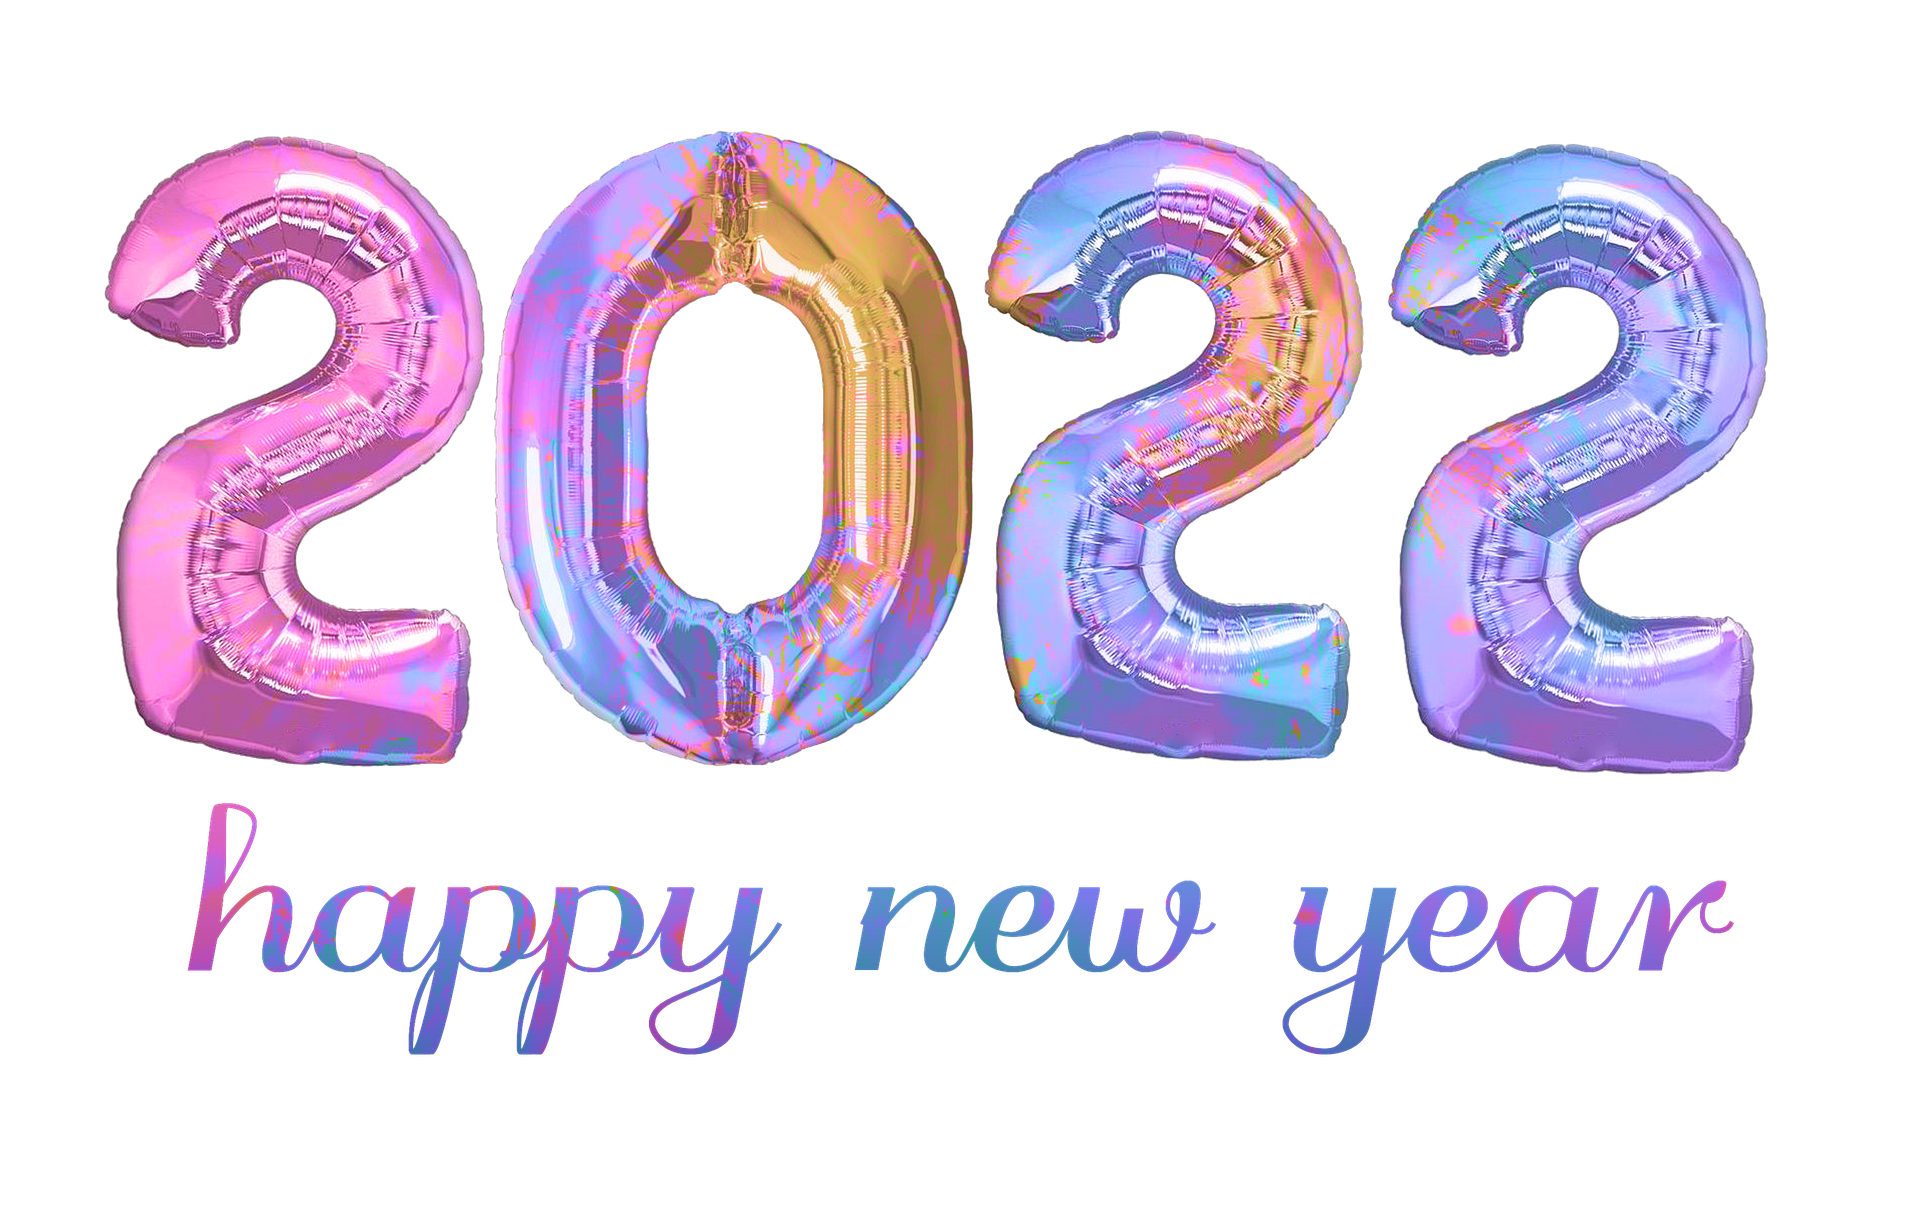 วันขึ้นปีใหม่และวันขึ้นปีใหม่ในปี พ.ศ. 2565